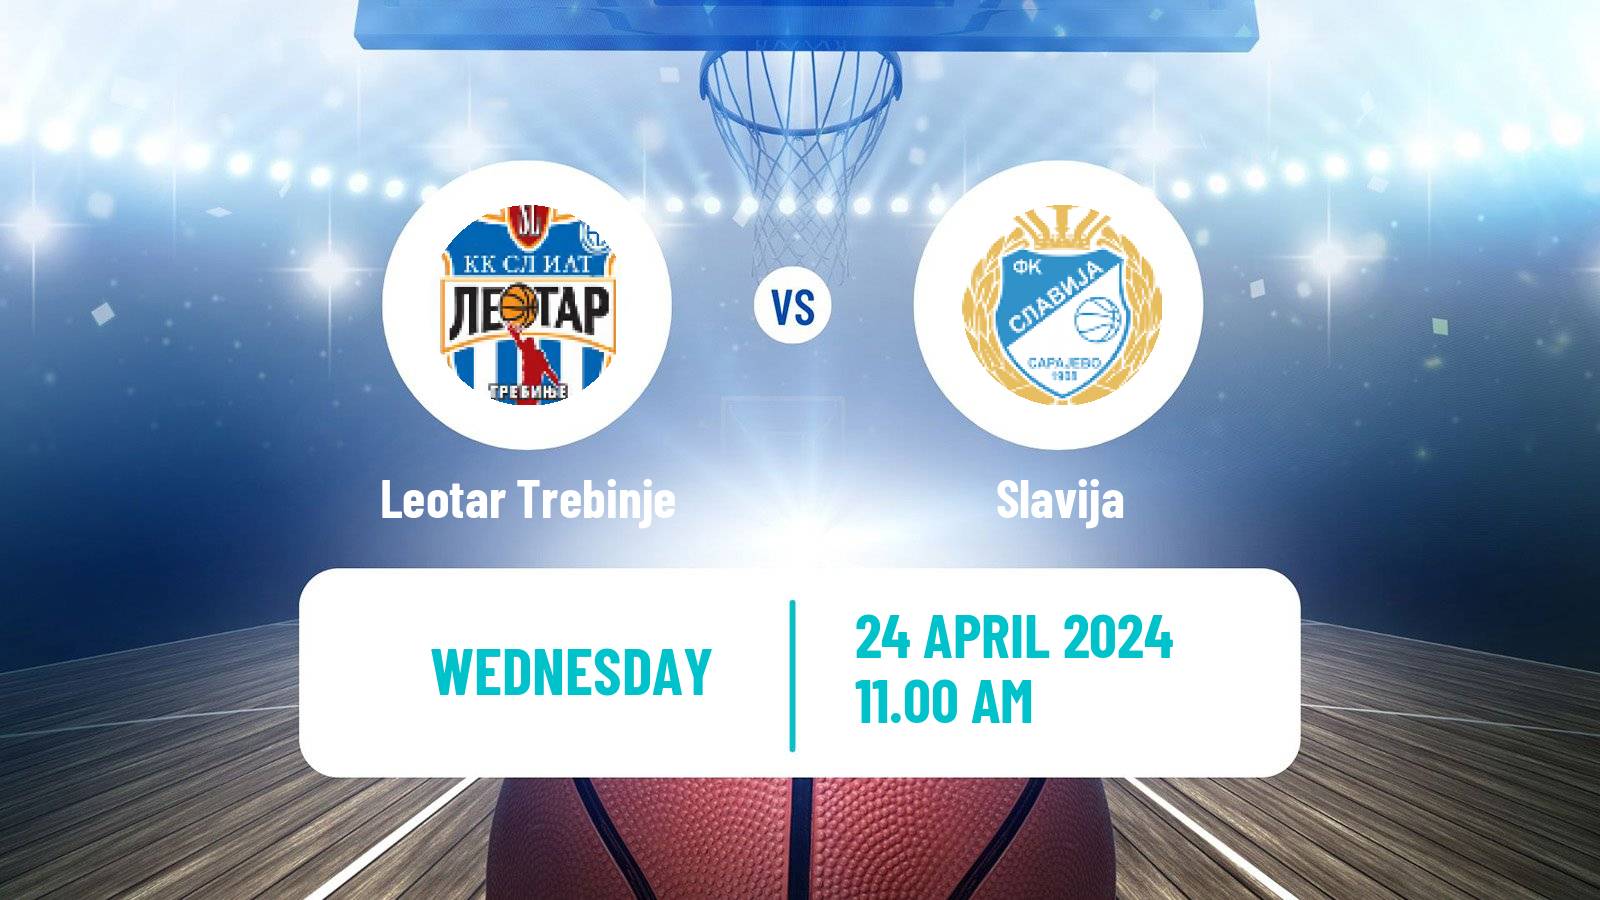 Basketball Bosnian Prvenstvo Basketball Leotar Trebinje - Slavija